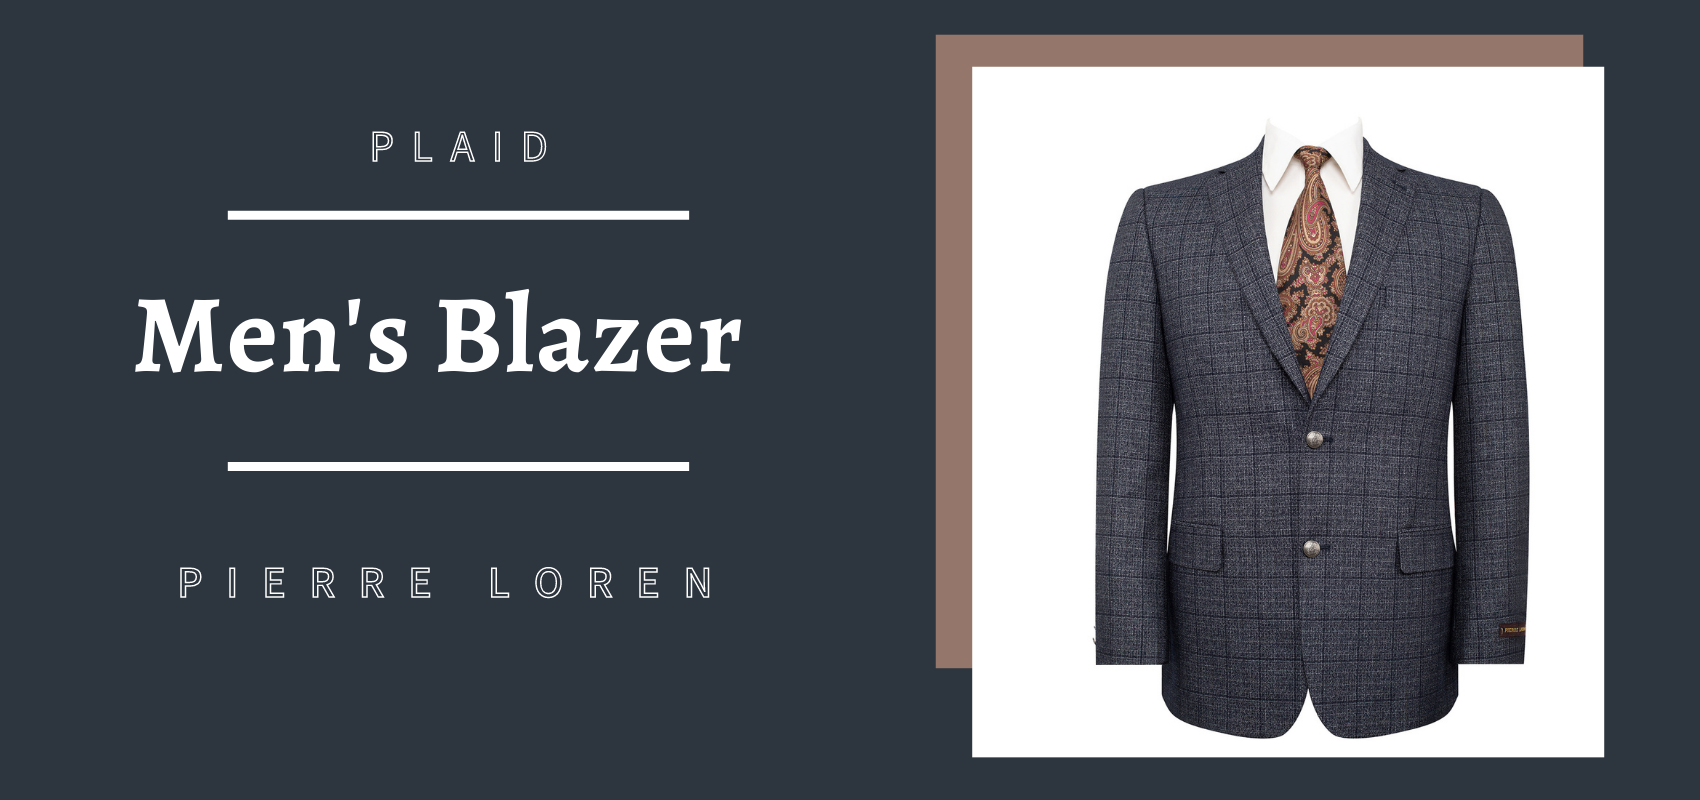 P&L Men's Blazer Premium Stretch Classic Fit Sport Coat Suit Jacket at   Men’s Clothing store